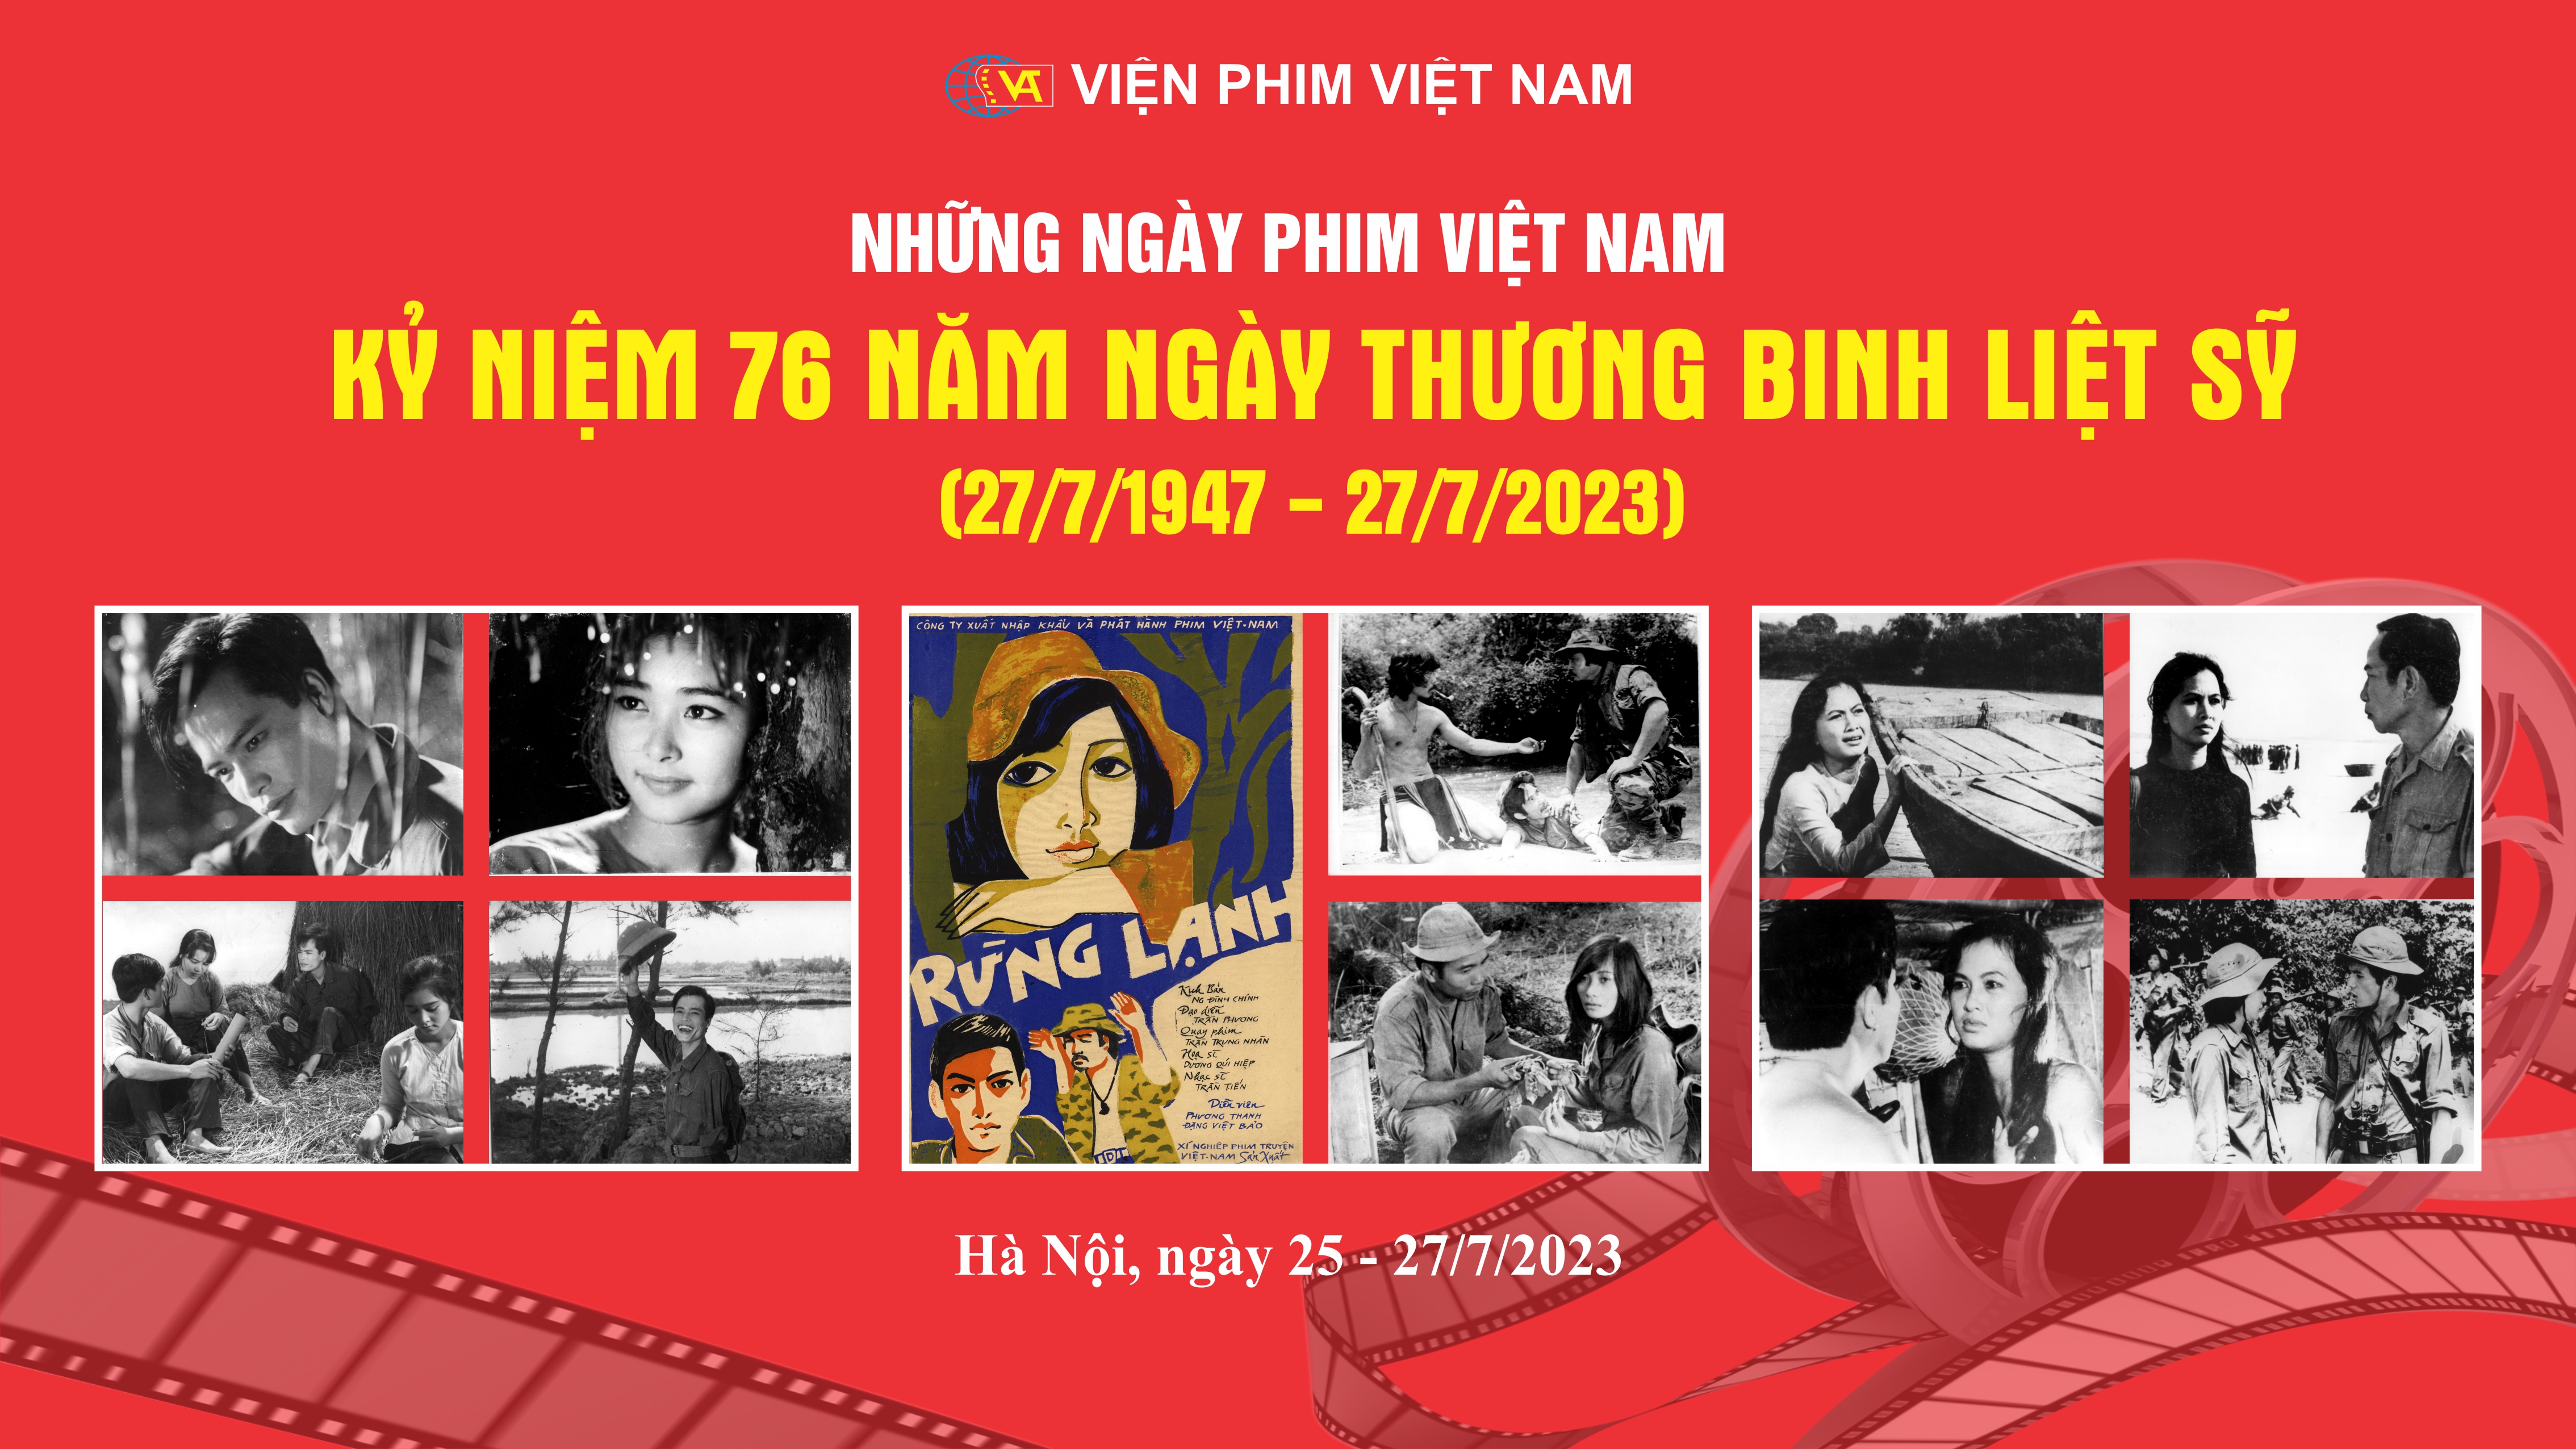 Khán giả với chương trình Điện ảnh kỷ niệm 78 năm ngày Quốc khánh nước Cộng hòa xã hội chủ nghĩa Việt Nam